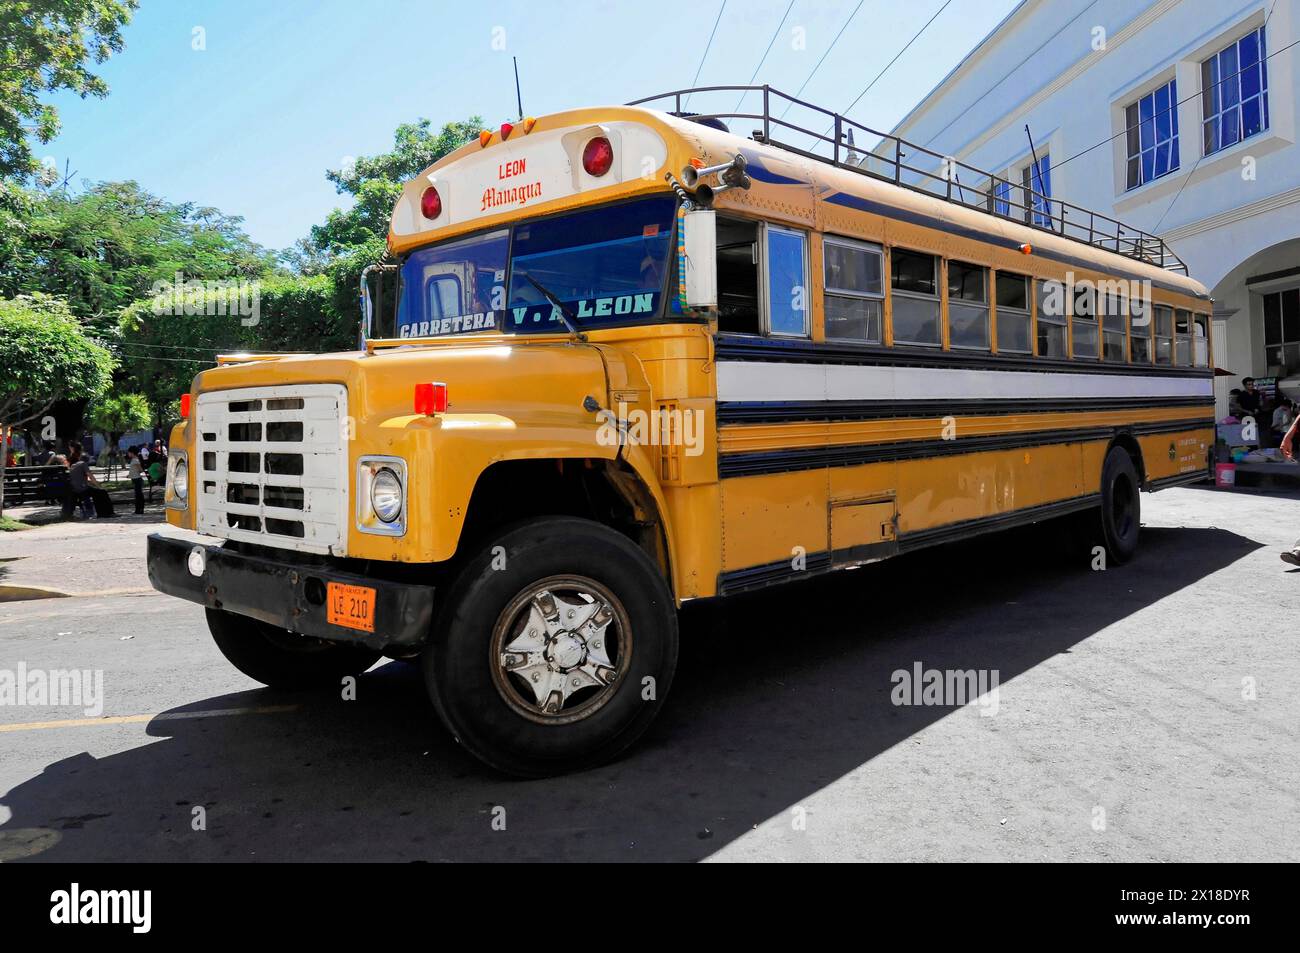 Leon, Nicaragua, uno scuolabus americano usato per i trasporti pubblici in America centrale, America centrale, America centrale Foto Stock